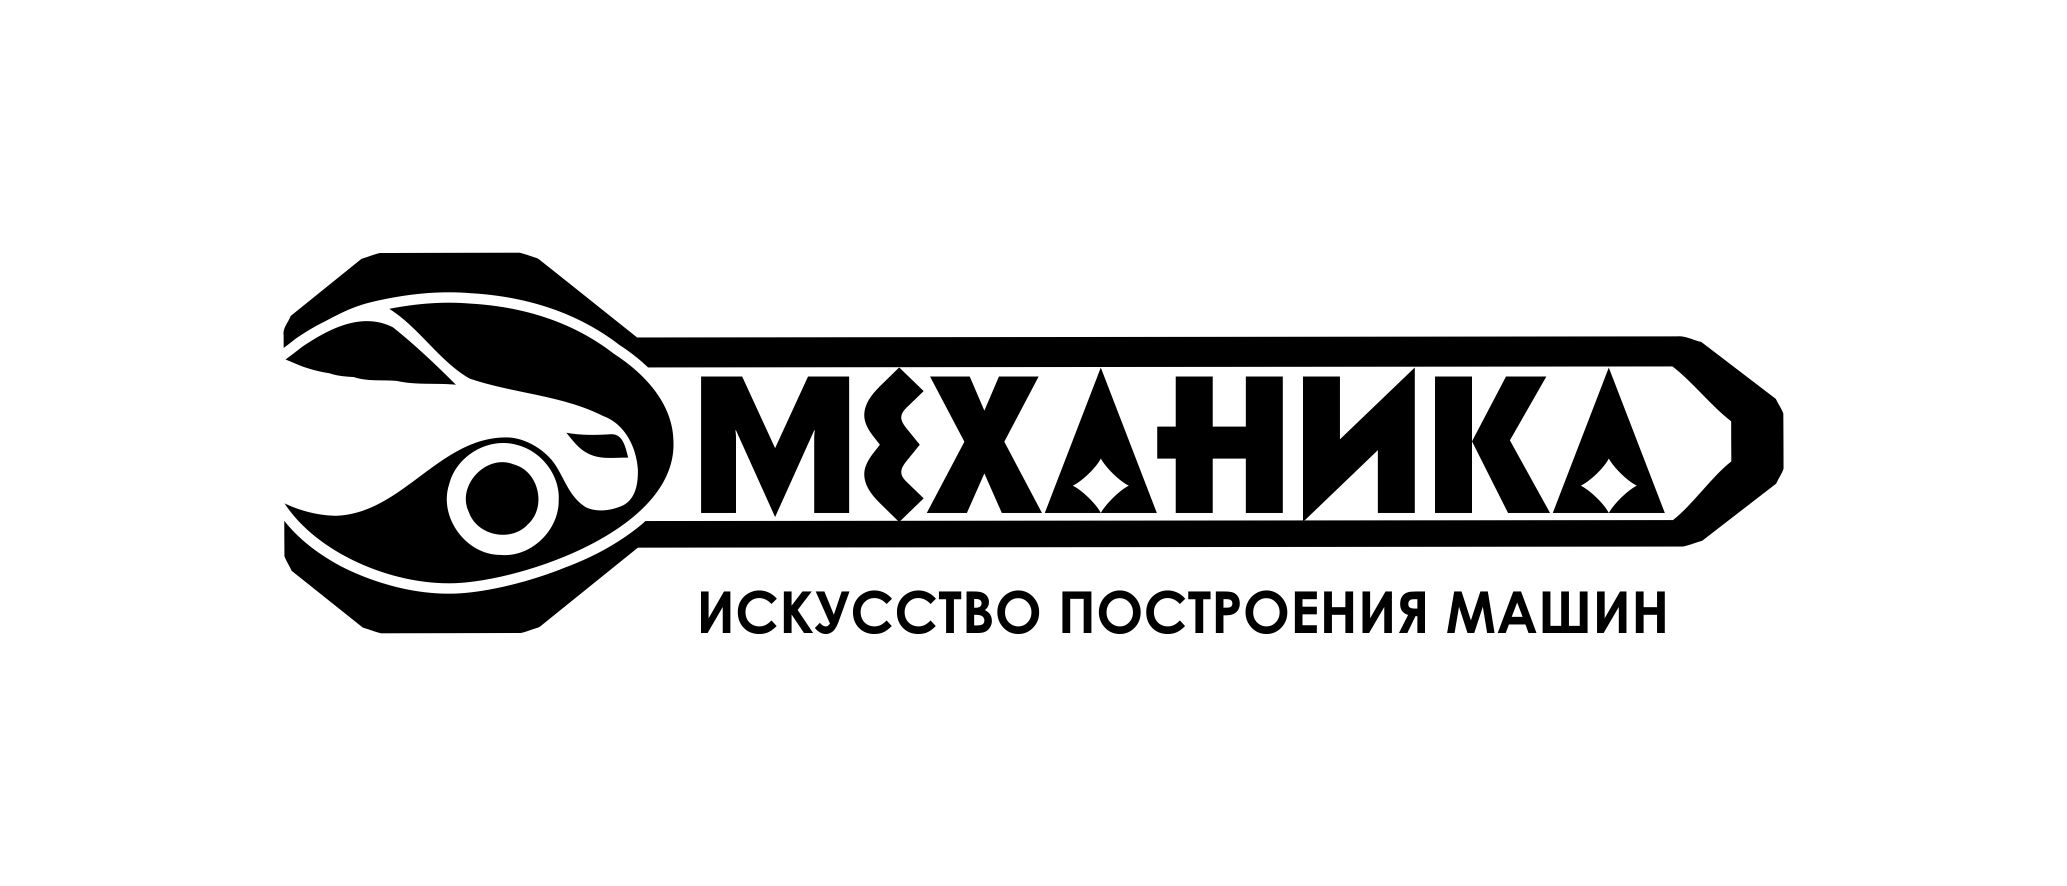 Логотип для магазина автозапчасти 'Механика' - дизайнер bor23